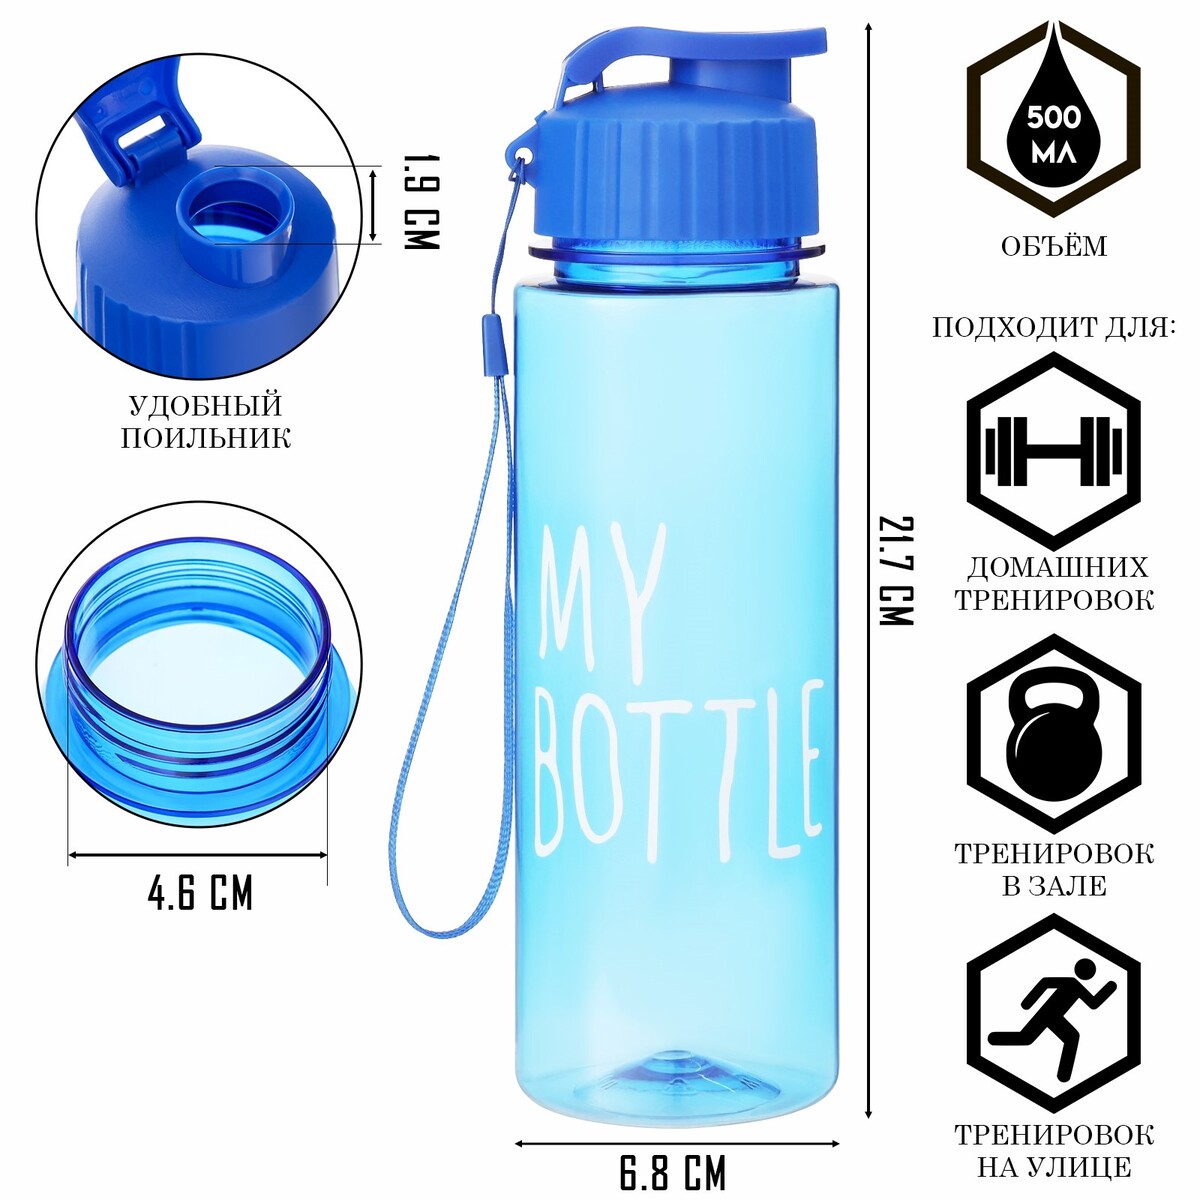 Бутылка для воды, 500 мл, my bottle, 21 х 6 см бутылка для воды 500 мл my bottle 19 5 х 6 см микс